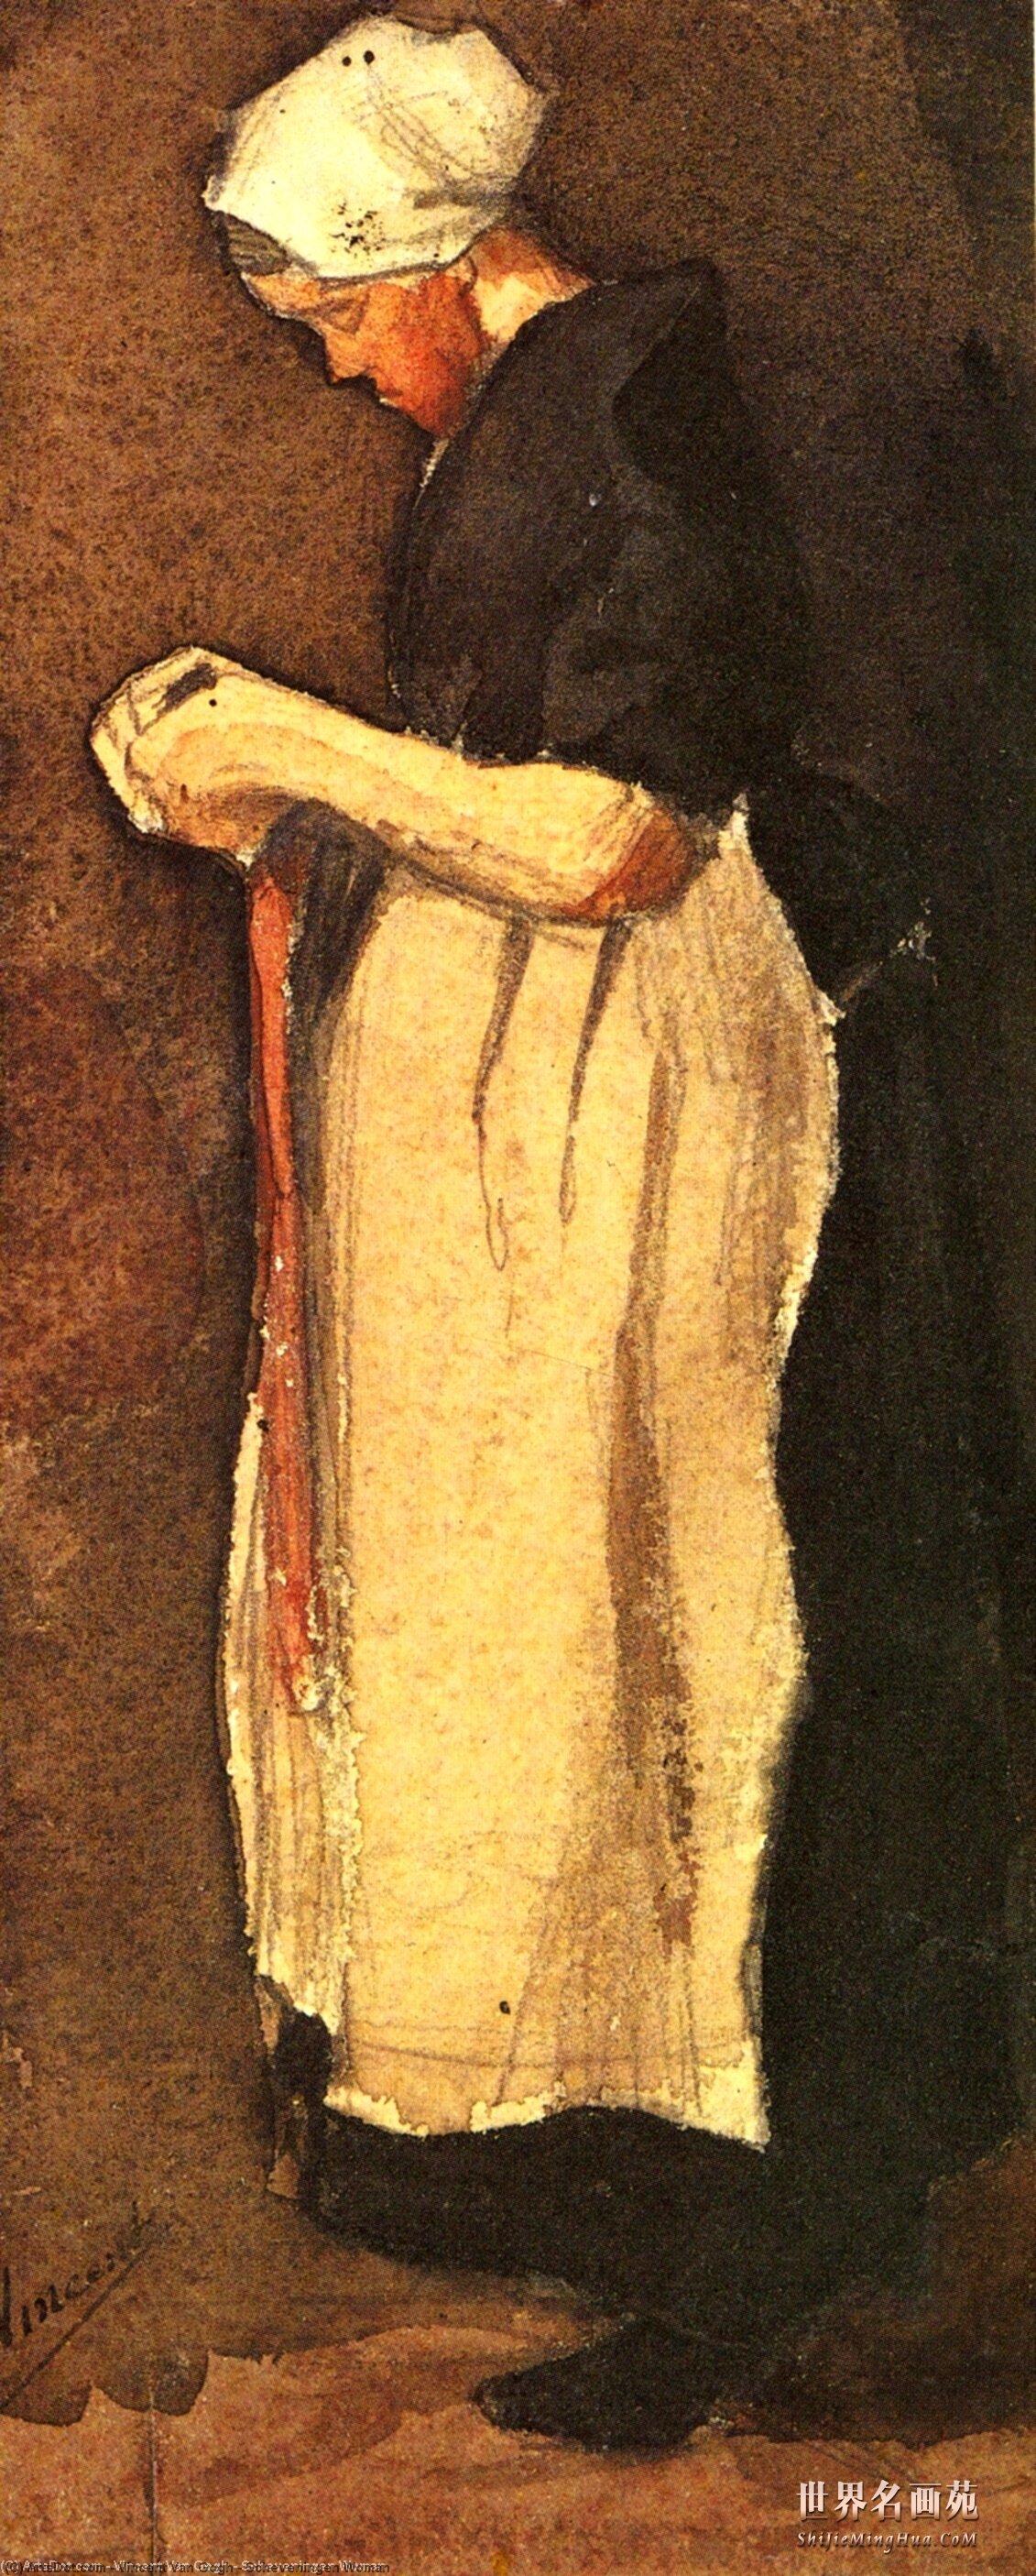 WikiOO.org - Enciklopedija likovnih umjetnosti - Slikarstvo, umjetnička djela Vincent Van Gogh - Scheveningen Woman